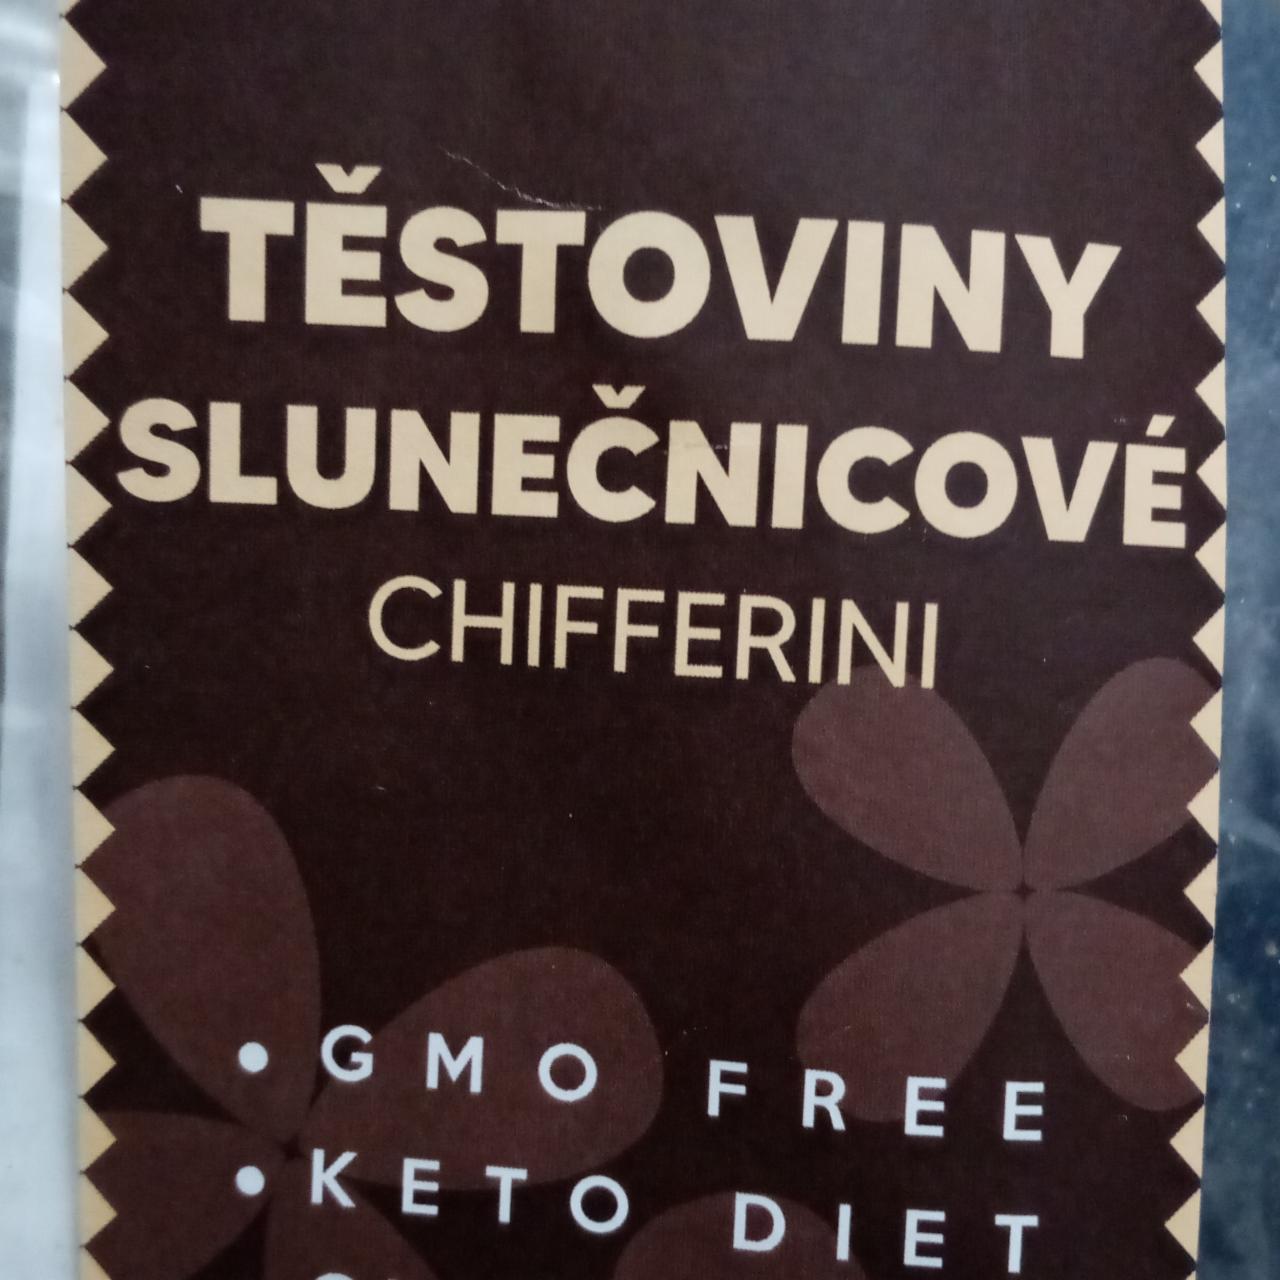 Fotografie - Těstoviny slunečnicové chifferini Natural products